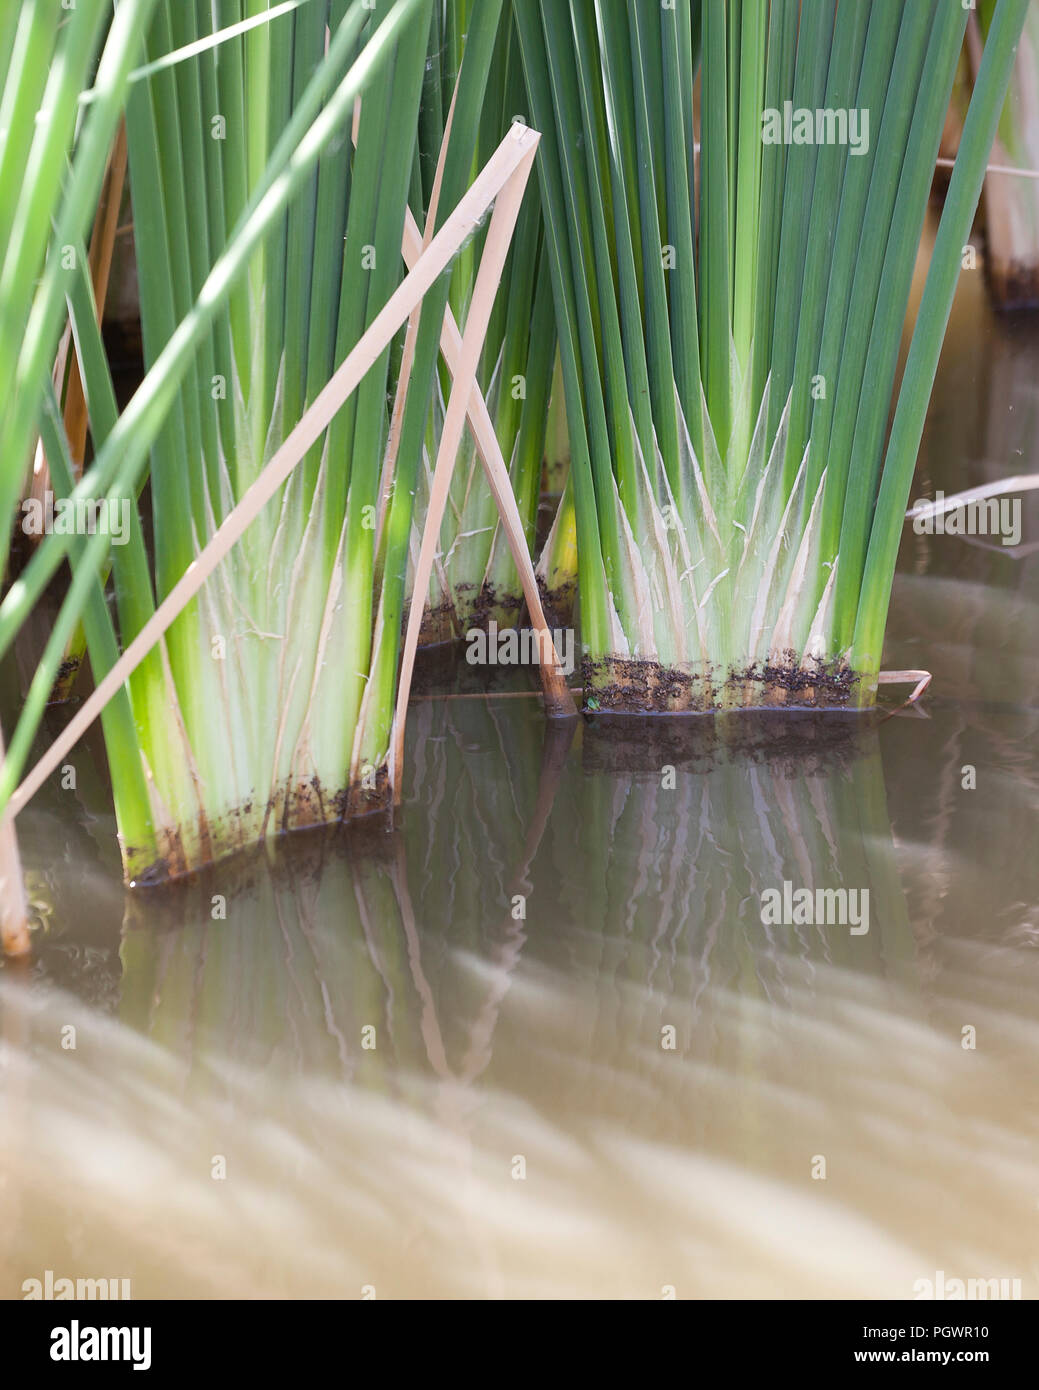 Tifa comune reed base di foglia, aka reedmace, giunco, (Typha latifolia) - California USA Foto Stock